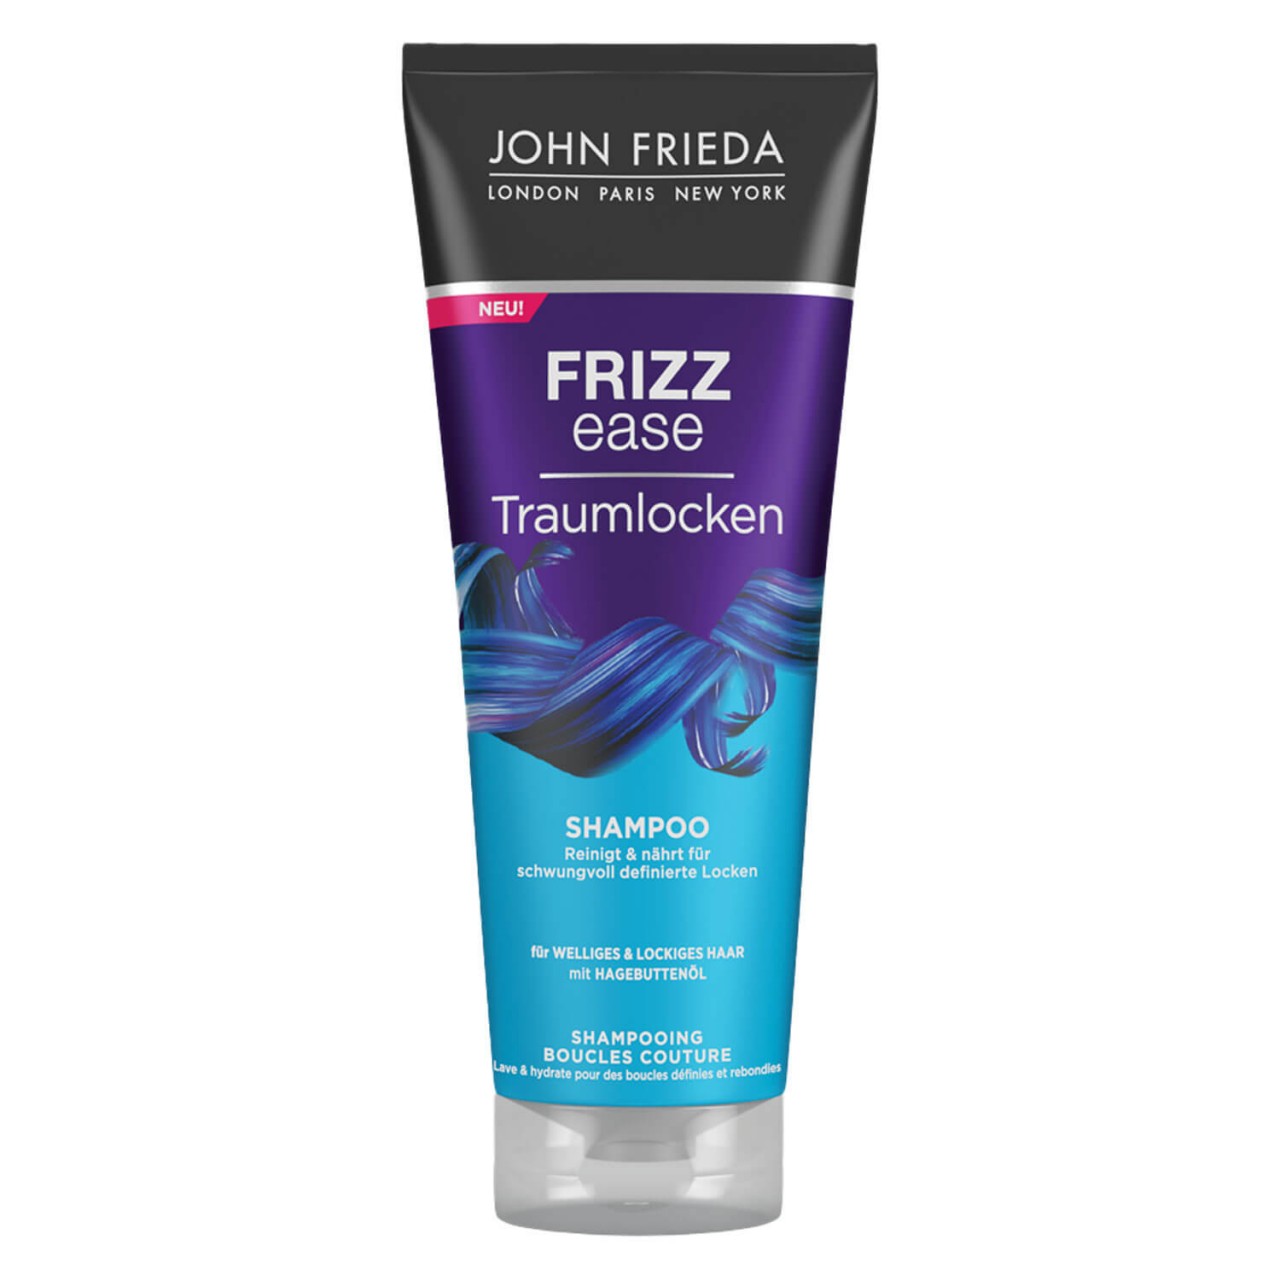 Frizz Ease - Traumlocken Shampoo von John Frieda